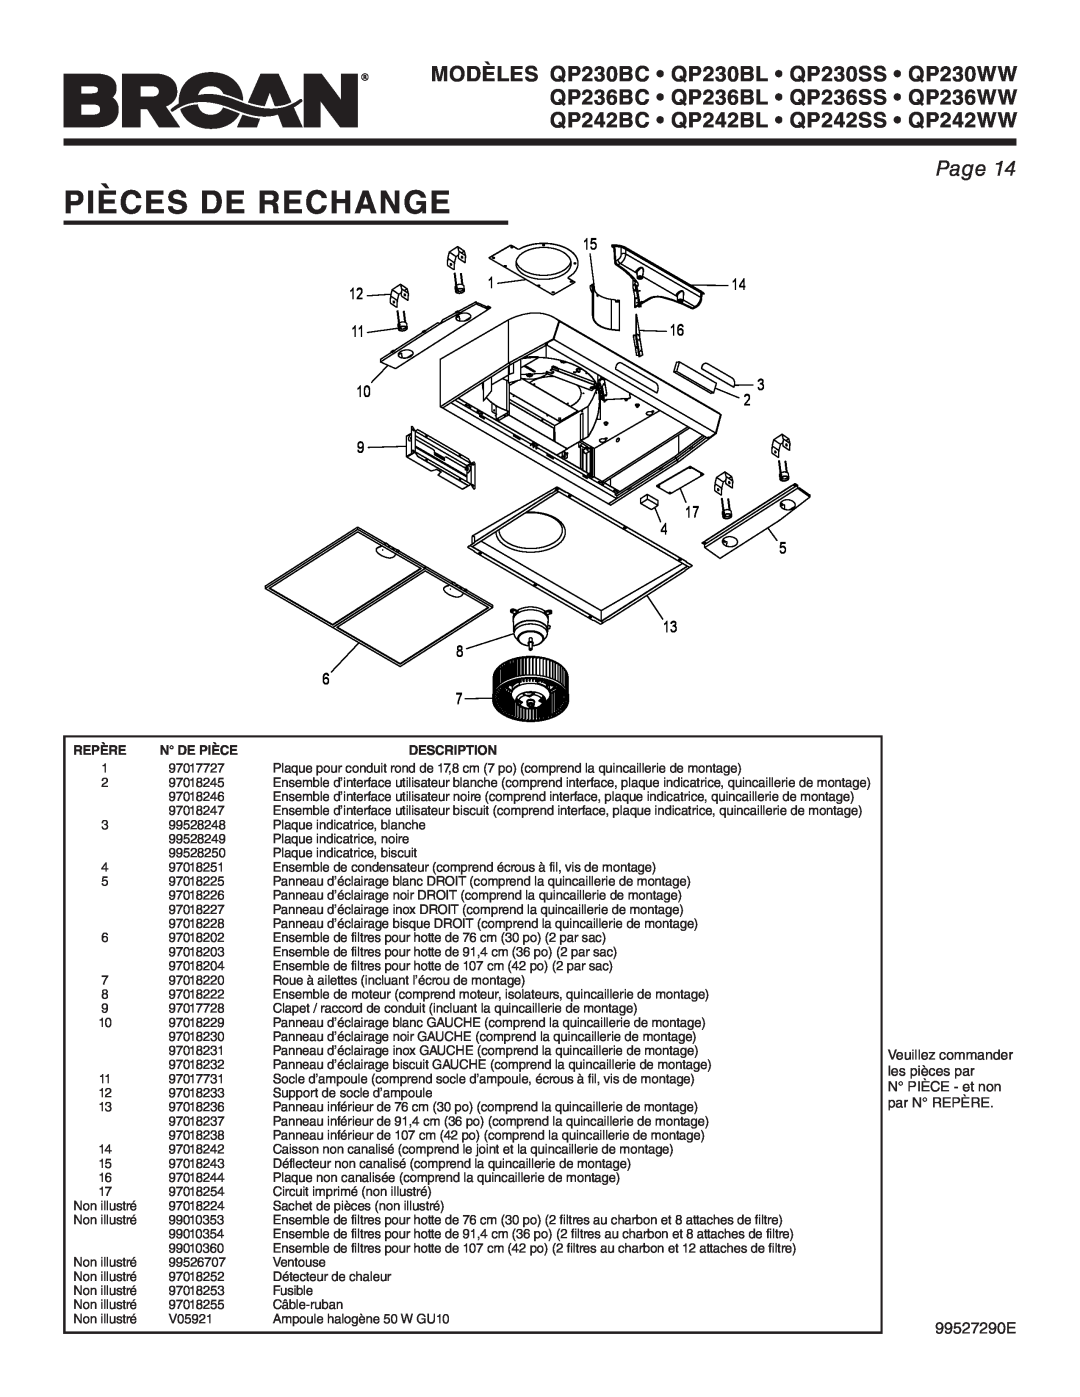 Broan QP236BC Pièces De Rechange, Page, Veuillez commander, les pièces par, N PIÈCE - et non, par N REPÈRE, 99527290E 